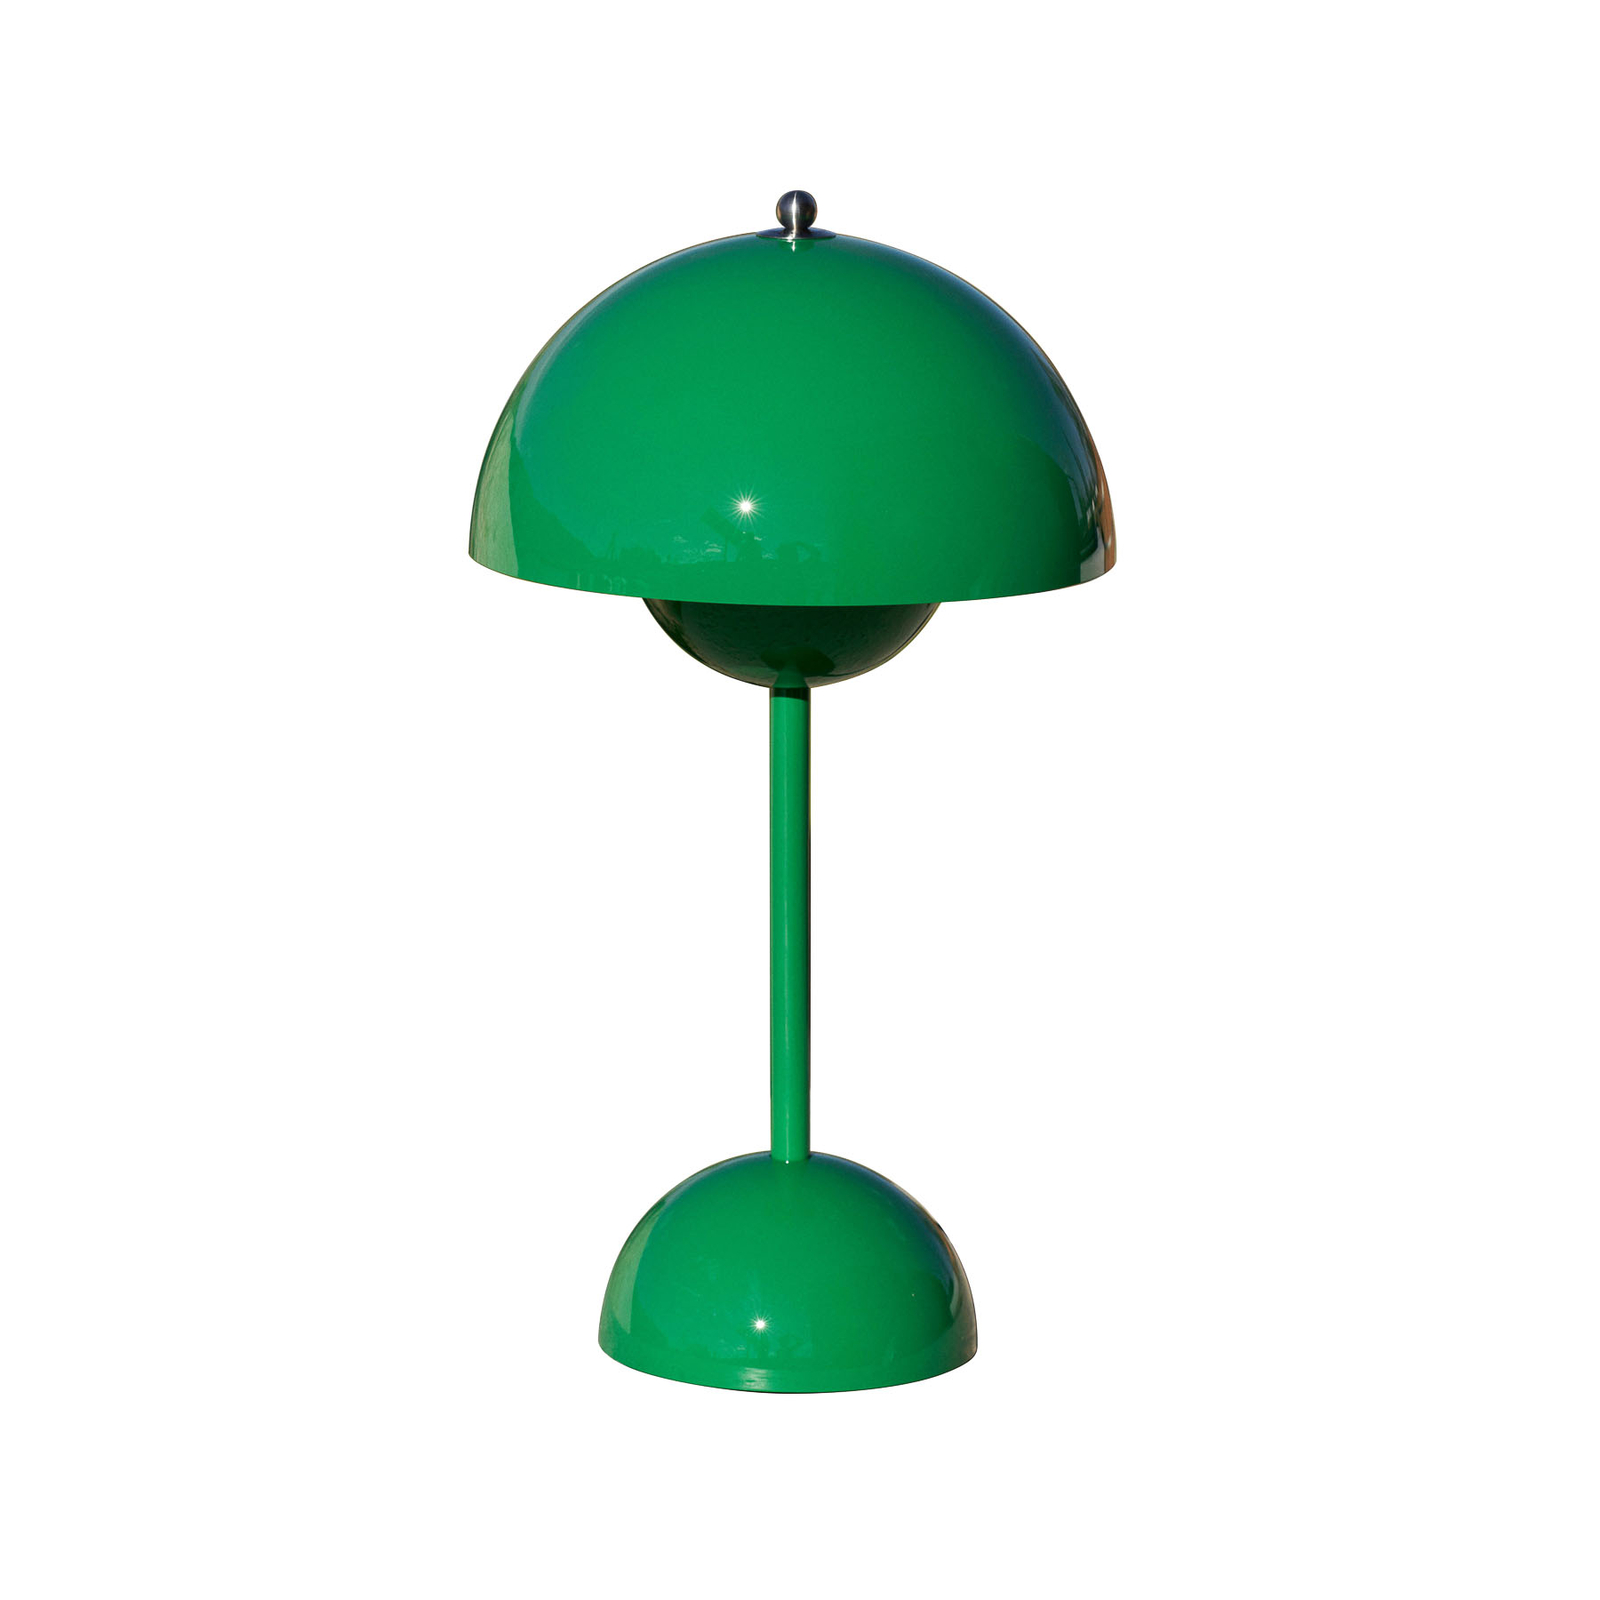 &Tradičná LED dobíjacia stolná lampa Flowerpot VP9, signálna zelená